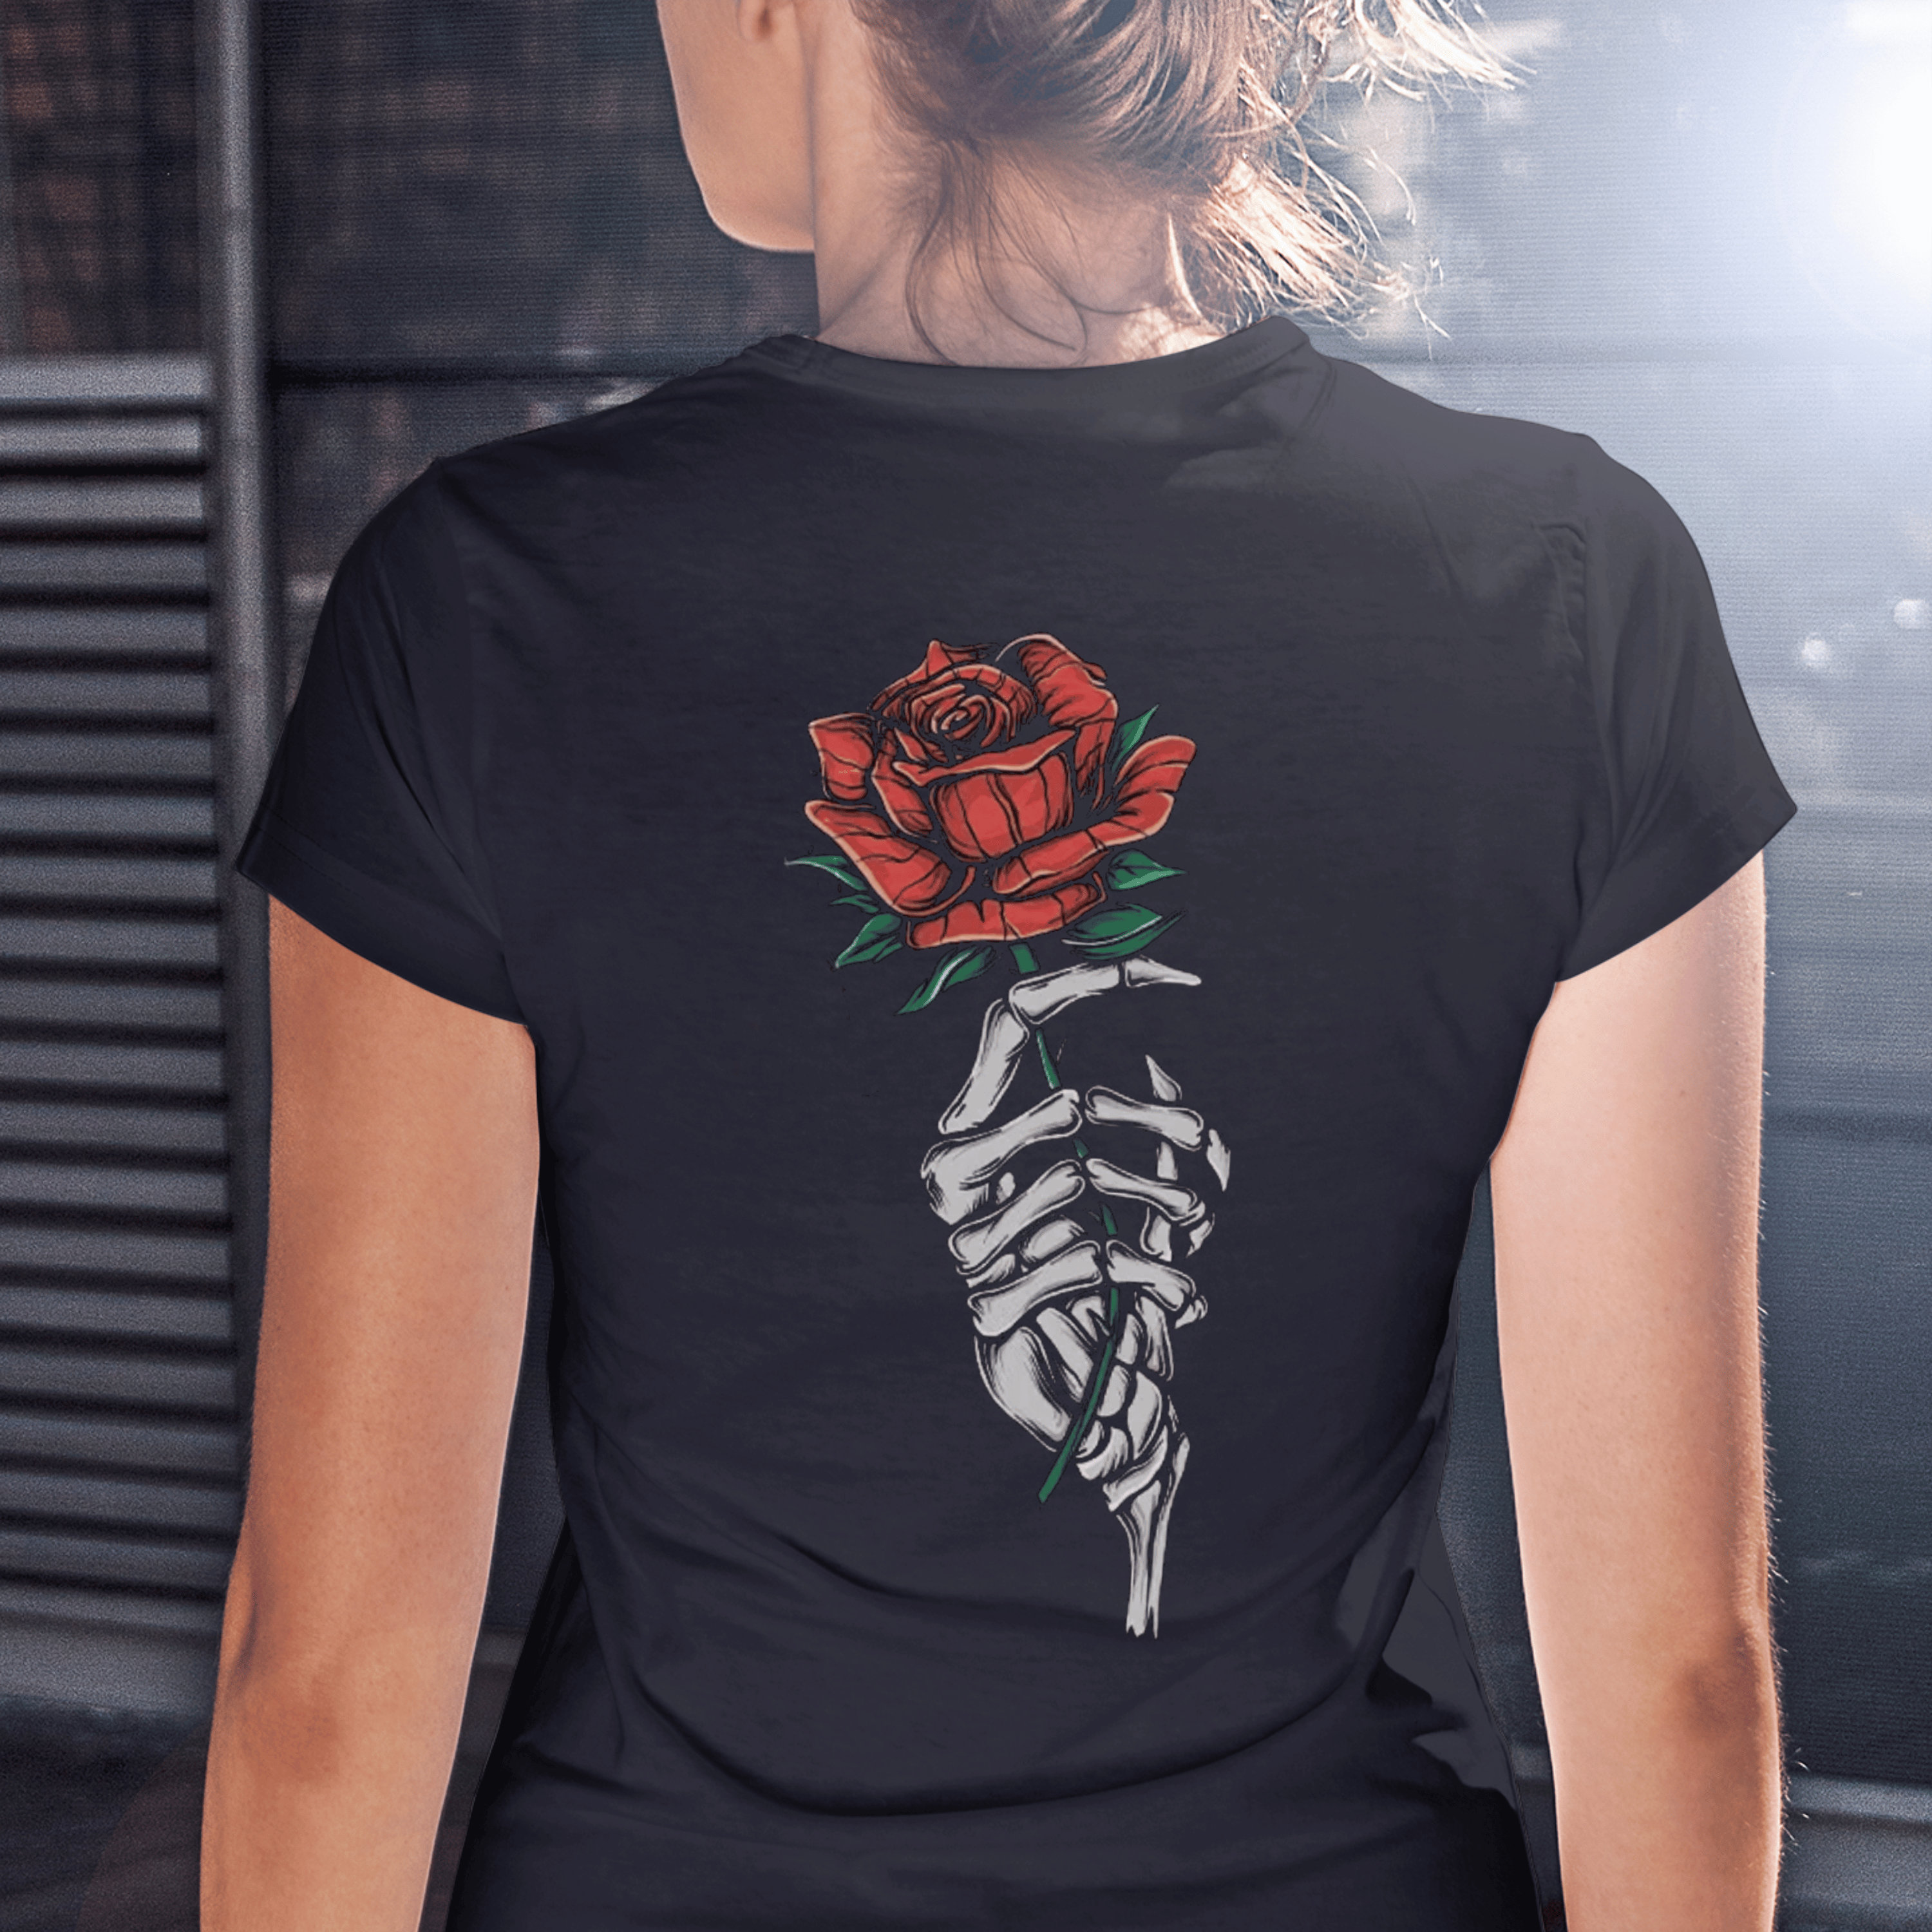 Schwarzes Damen-T-Shirt mit geflügeltem Totenkopf